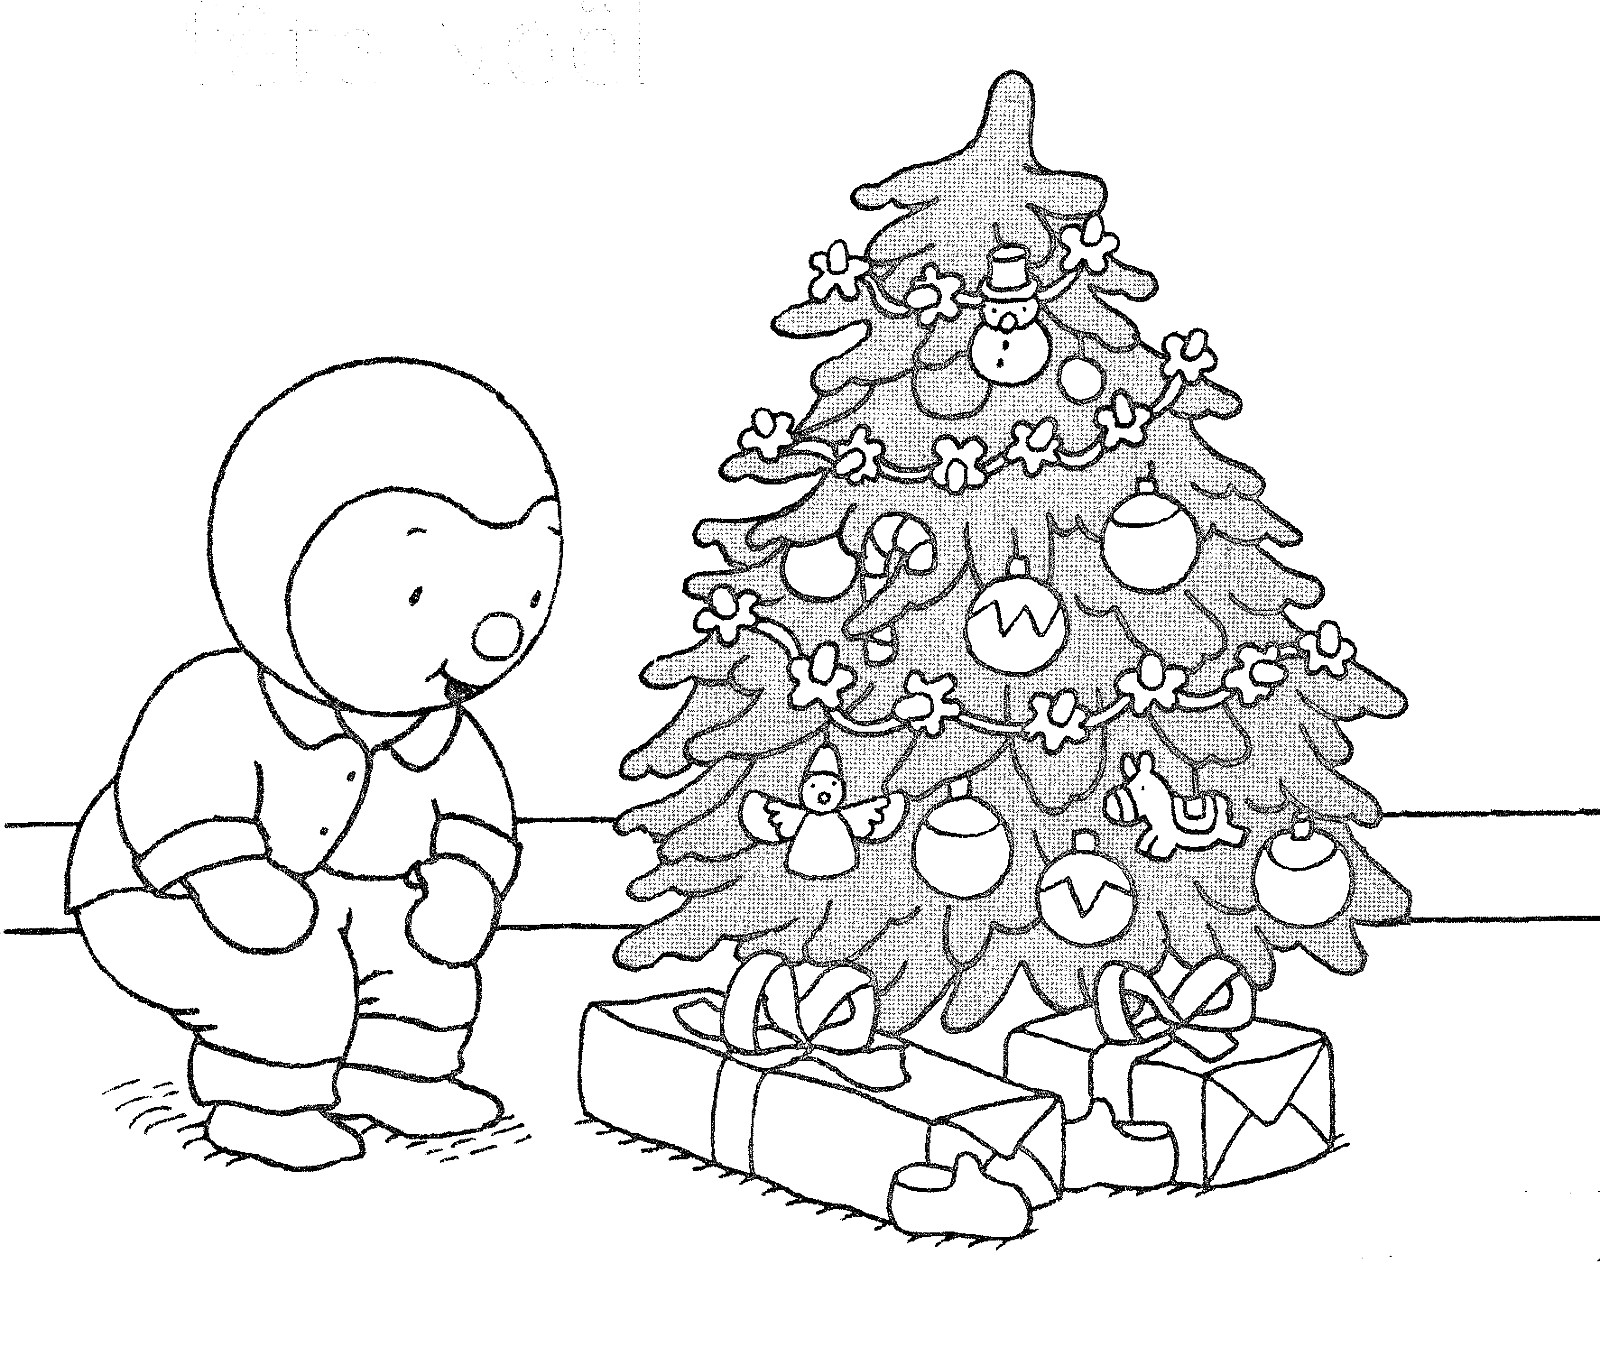 O T'choupi está a festejar o Natal debaixo da árvore: tem muitos presentes!